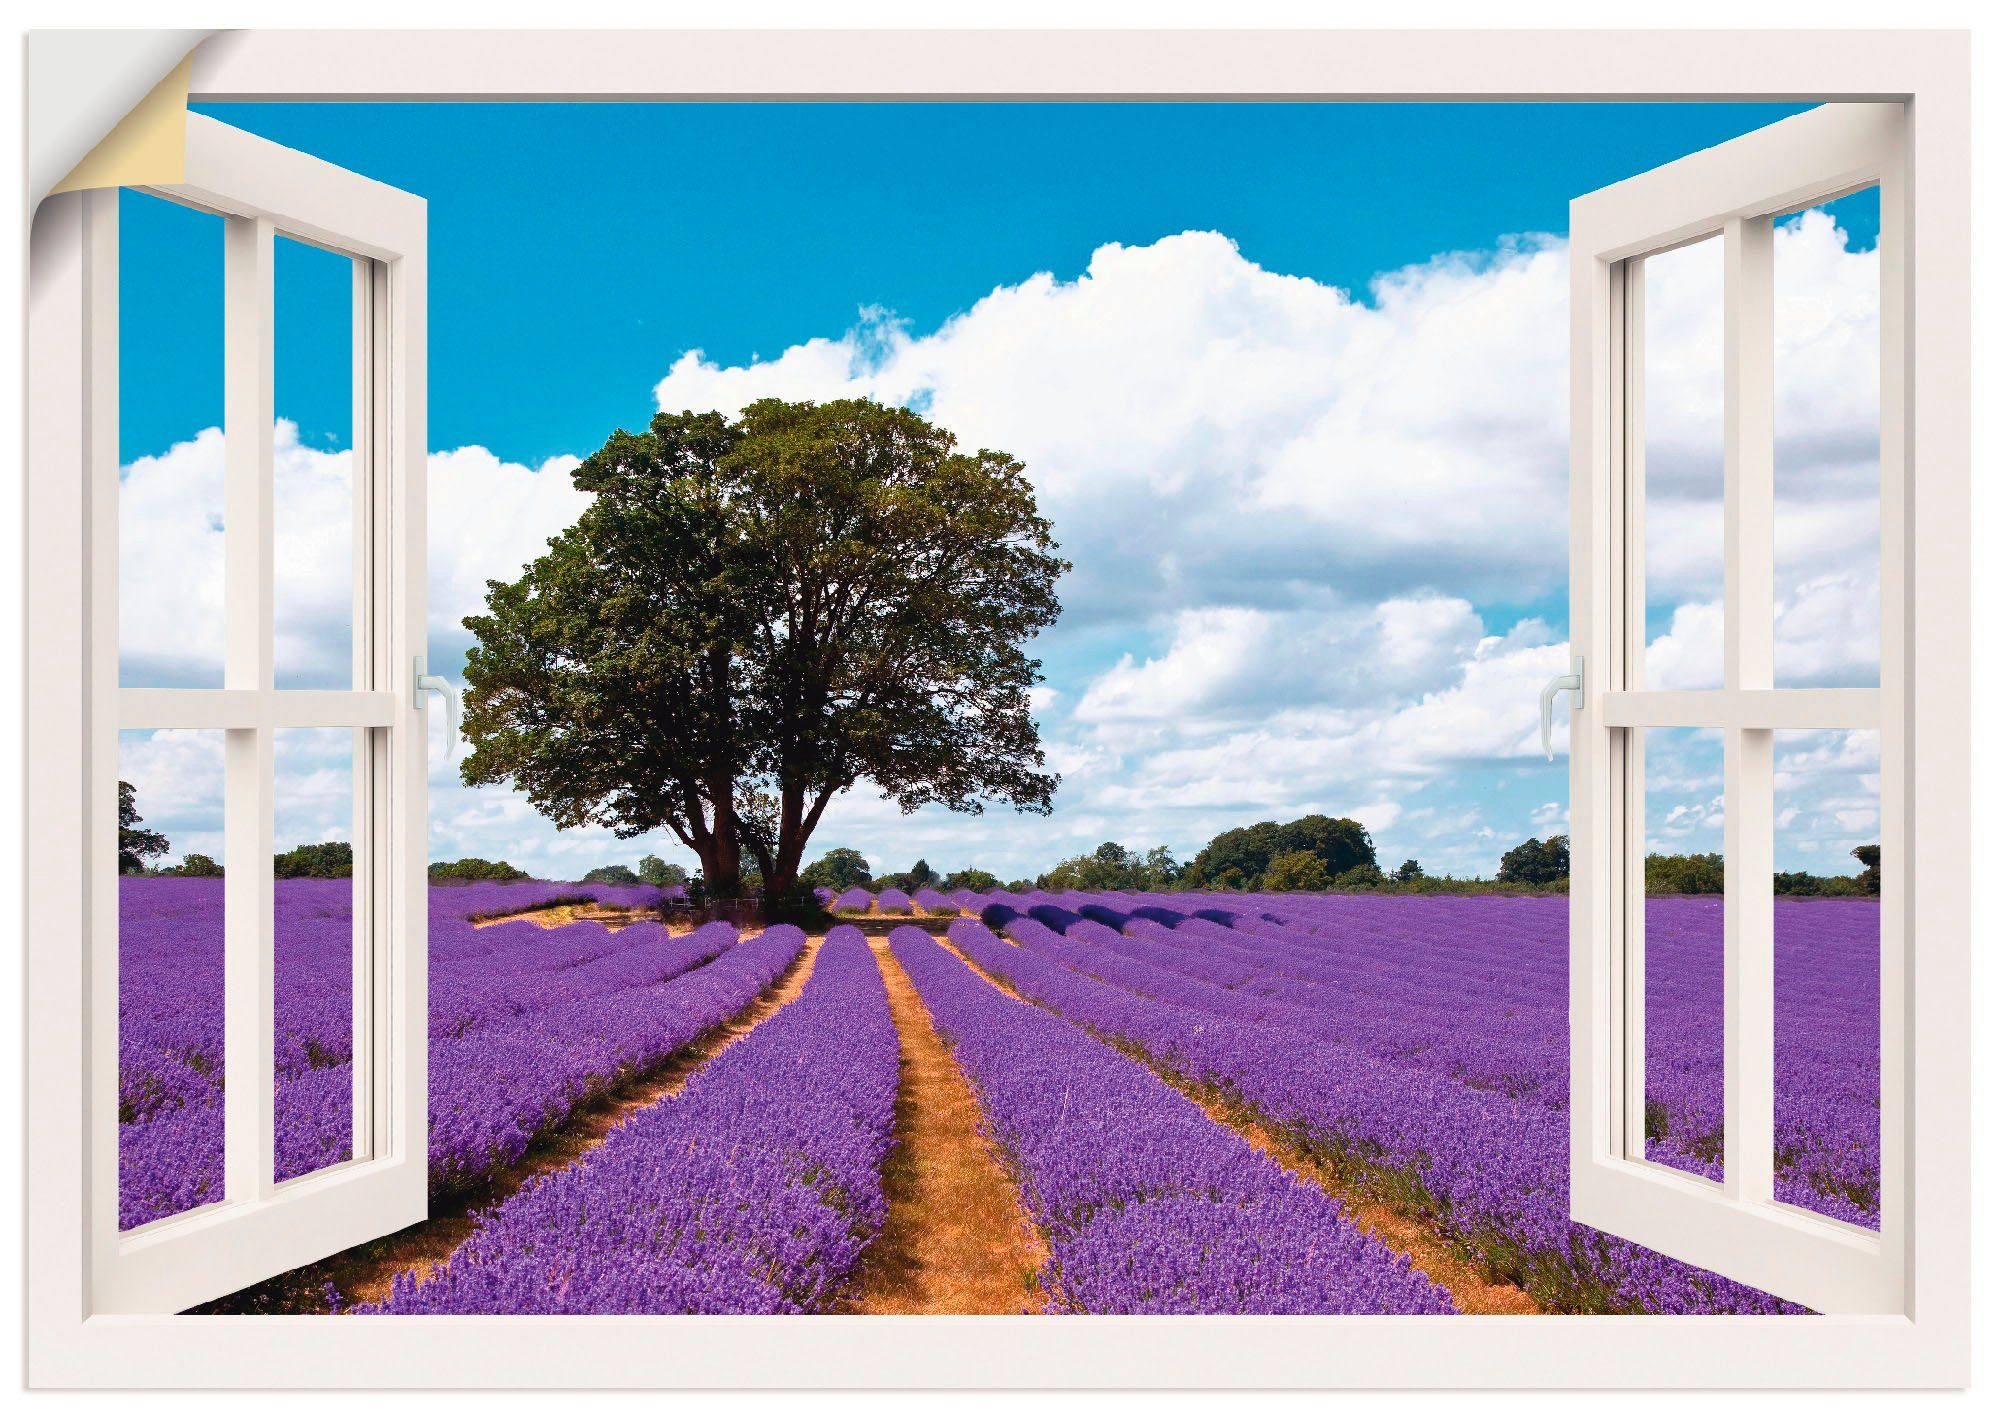 Artland Artprint Blik uit het venster lavendelveld in de zomer in vele afmetingen & productsoorten -artprint op linnen, poster, muursticker / wandfolie ook geschikt voor de badkame